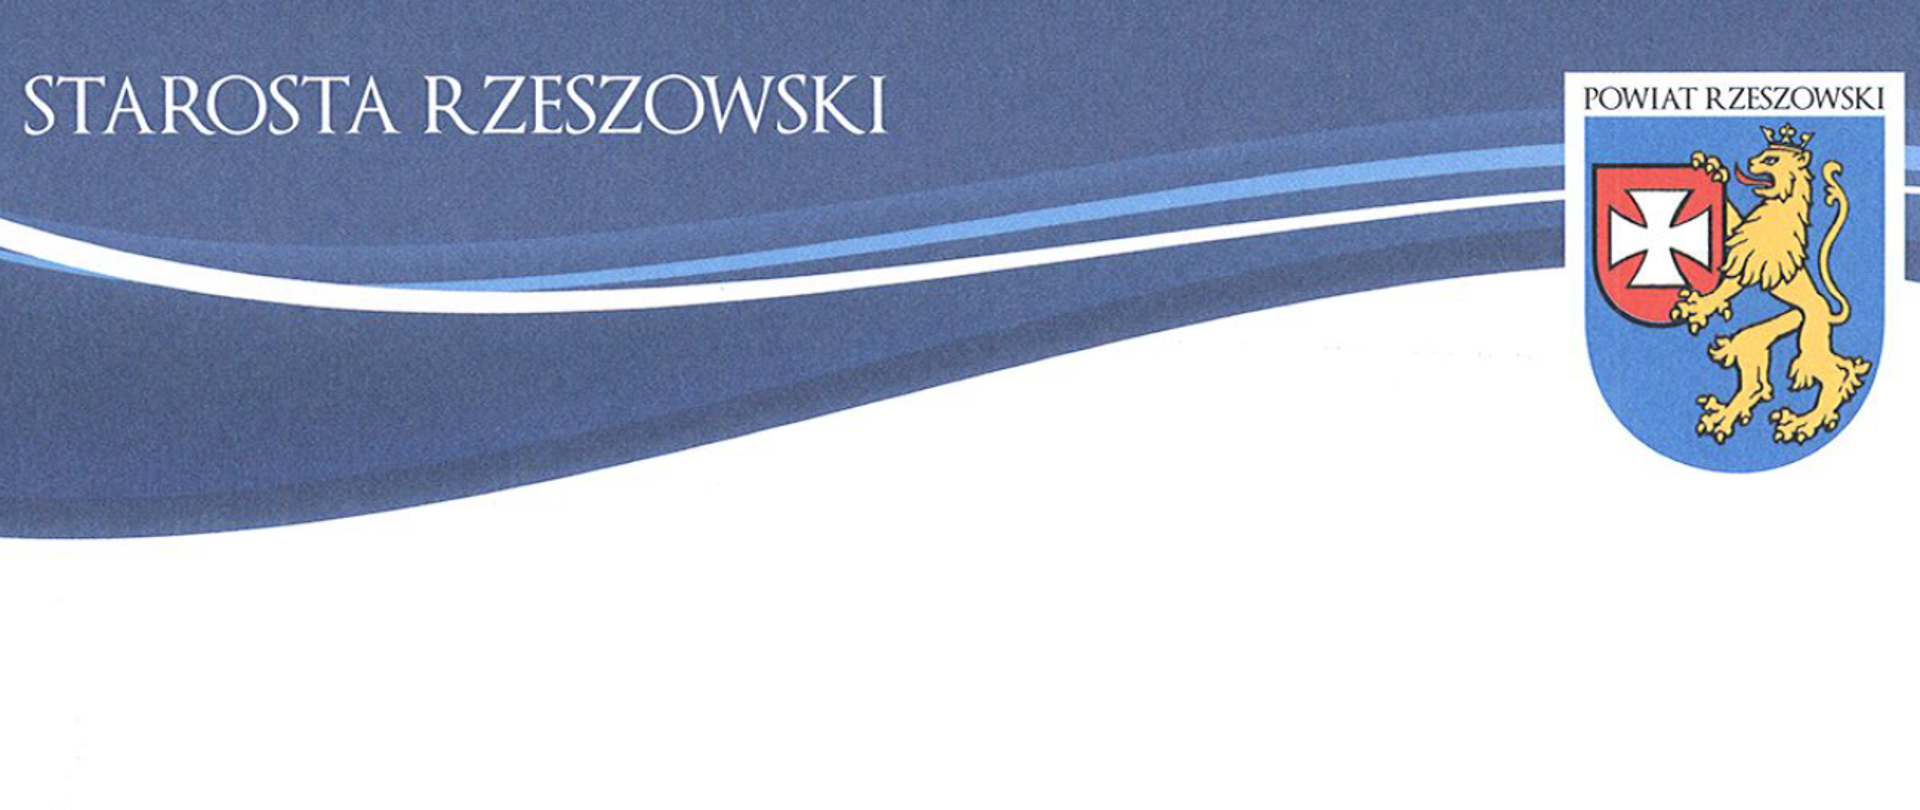 Zdjęcie przedstawia nagłówek listu gratulacyjnego starosty rzeszowskiego. W części lewej widnieje napis statosta rzeszowski, w części prawej znajduje się herb powiatu rzeszowskiego. Całość na biało-niebieskim tle rozdzielonym falistym wzorem.